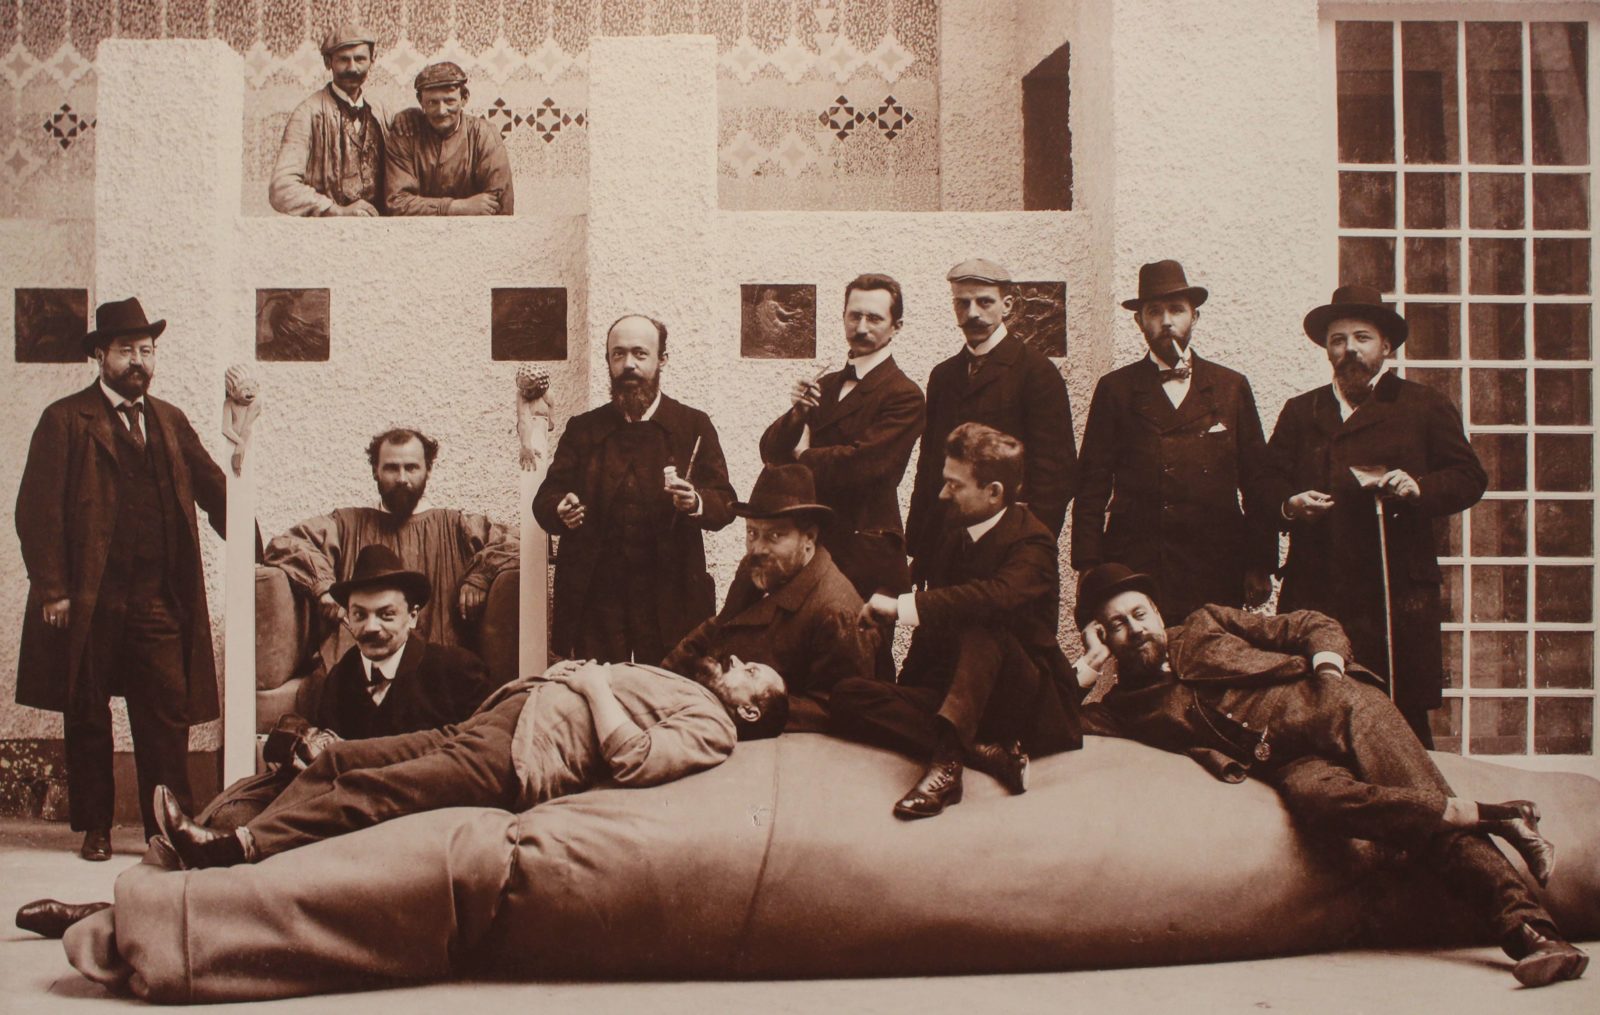  Avril 1902 – Photo XIVème exposition de la Sécession Vienne